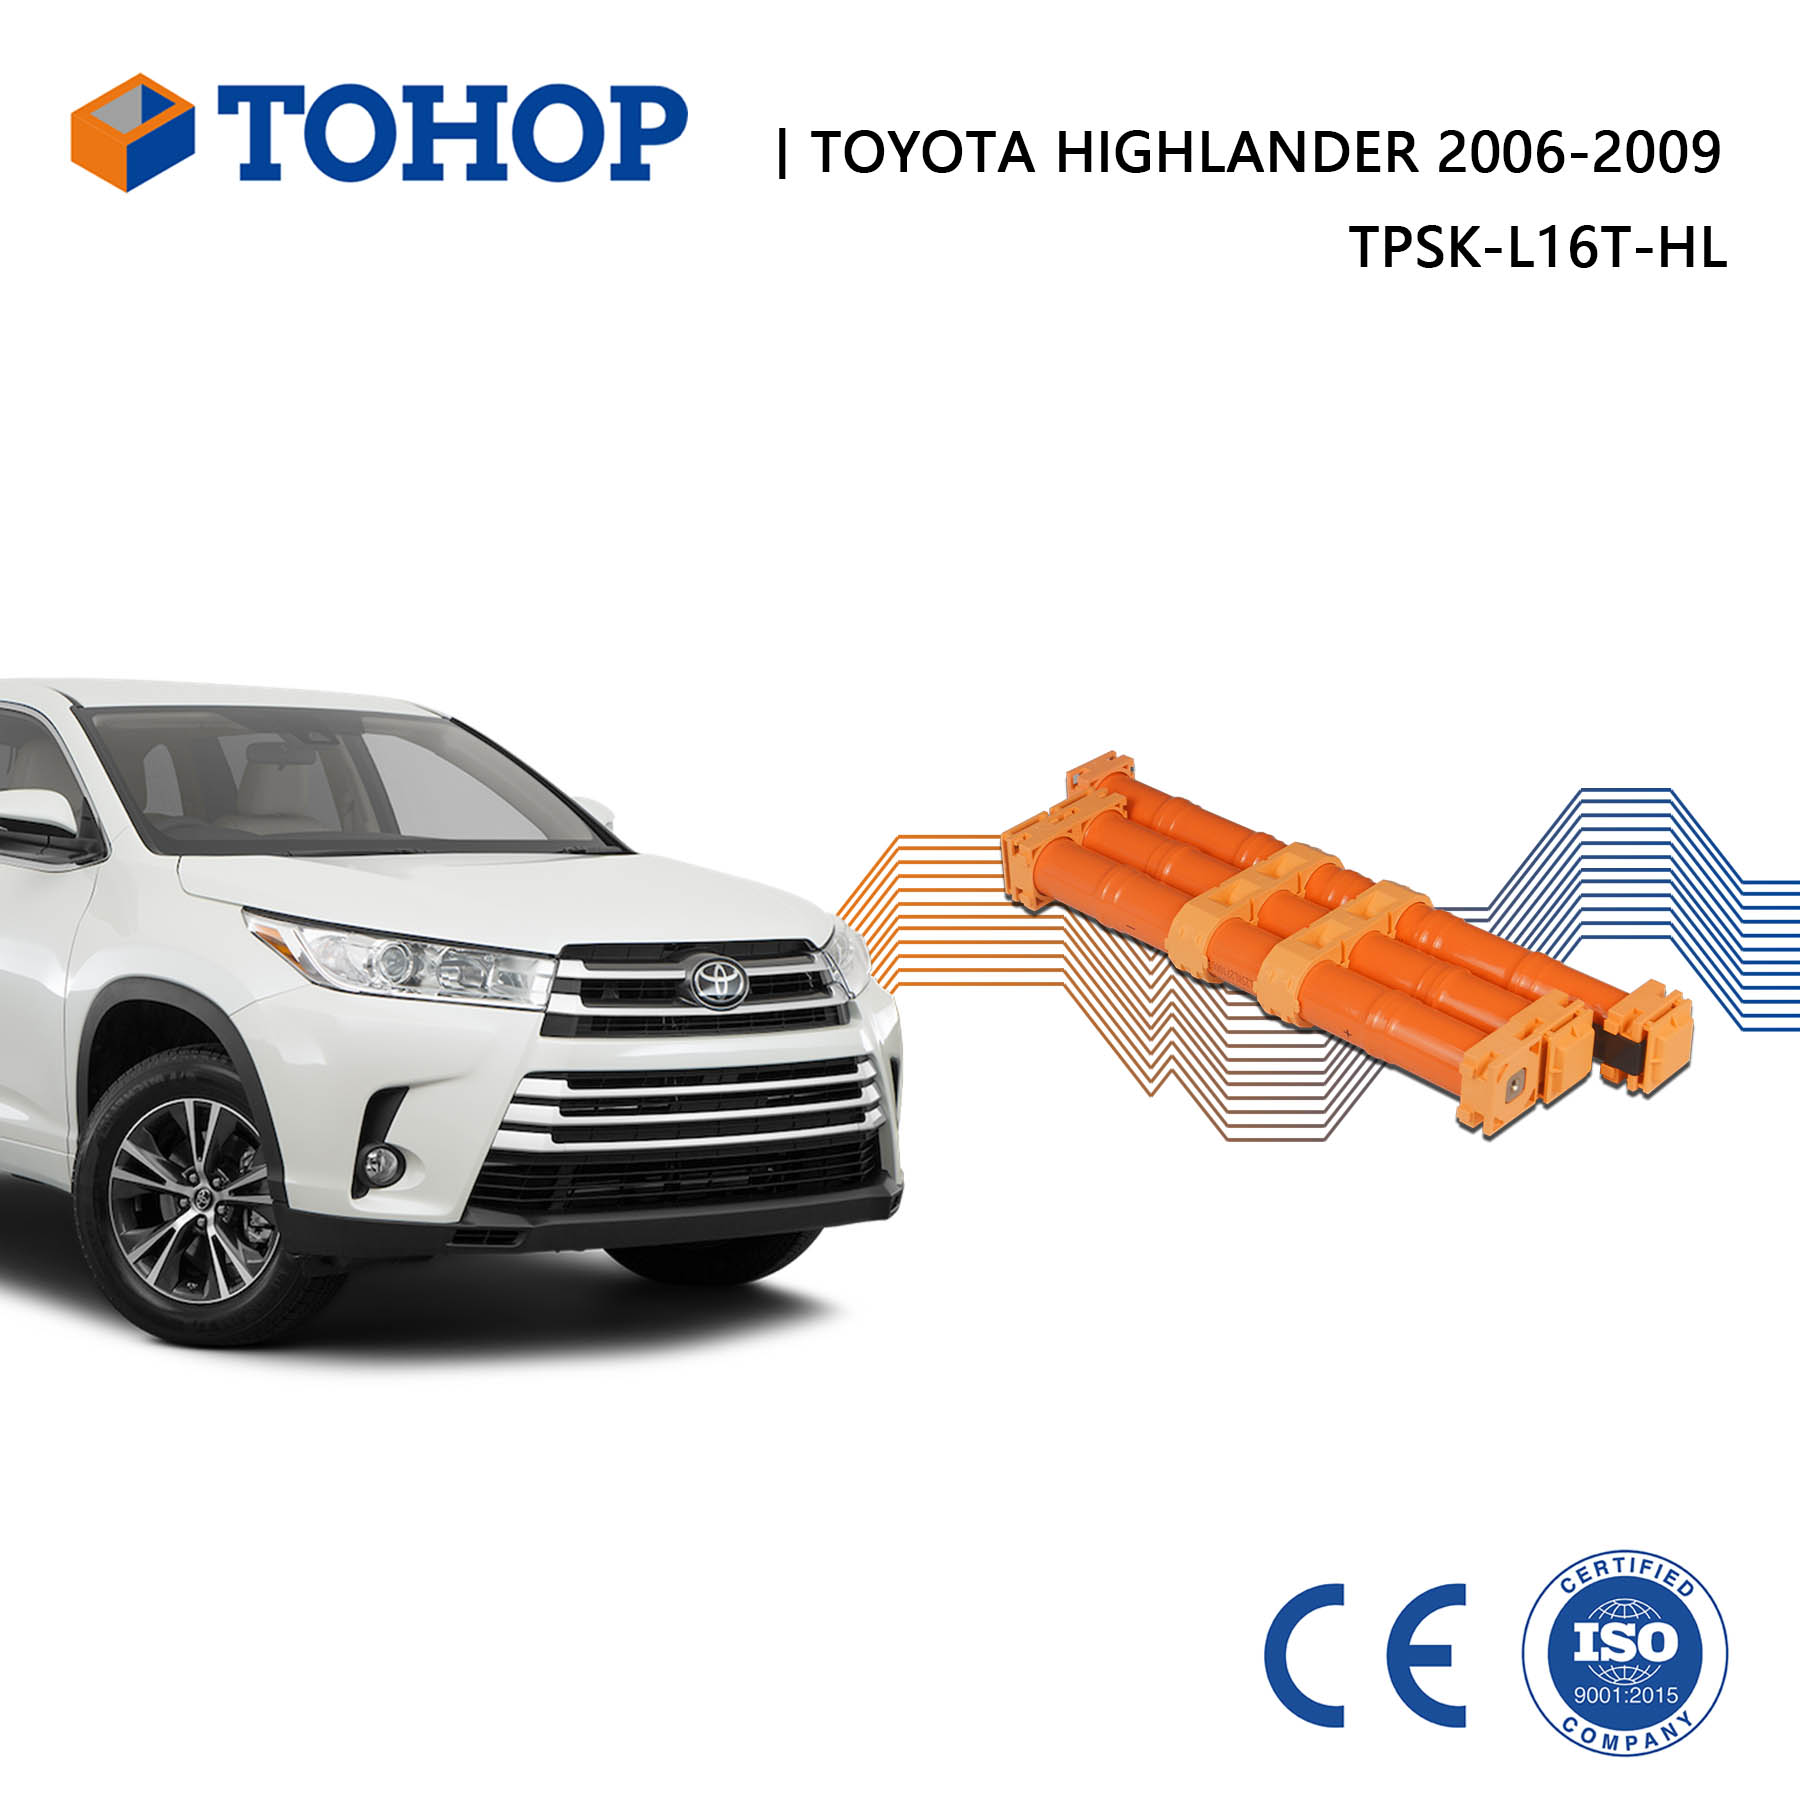 Toyota Highlander Hybridbatterie